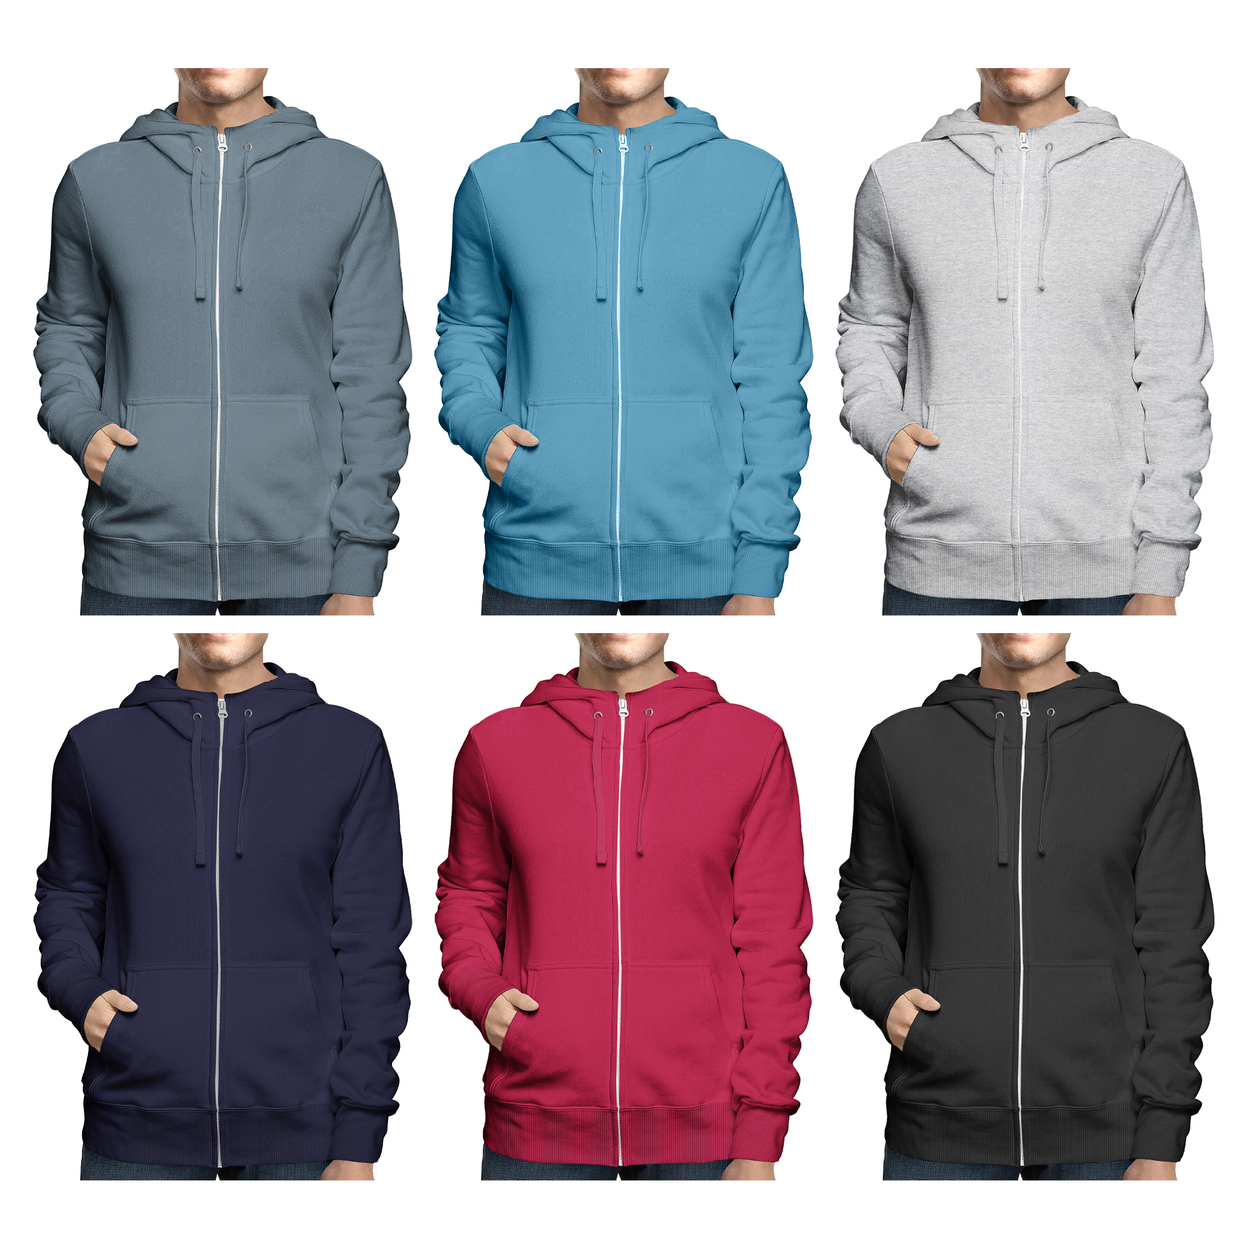 Men's Winter Warm Cozy Full Zip-Up Fleece Lined Soft Hoodie Sweatshirt - Charcoal, Medium